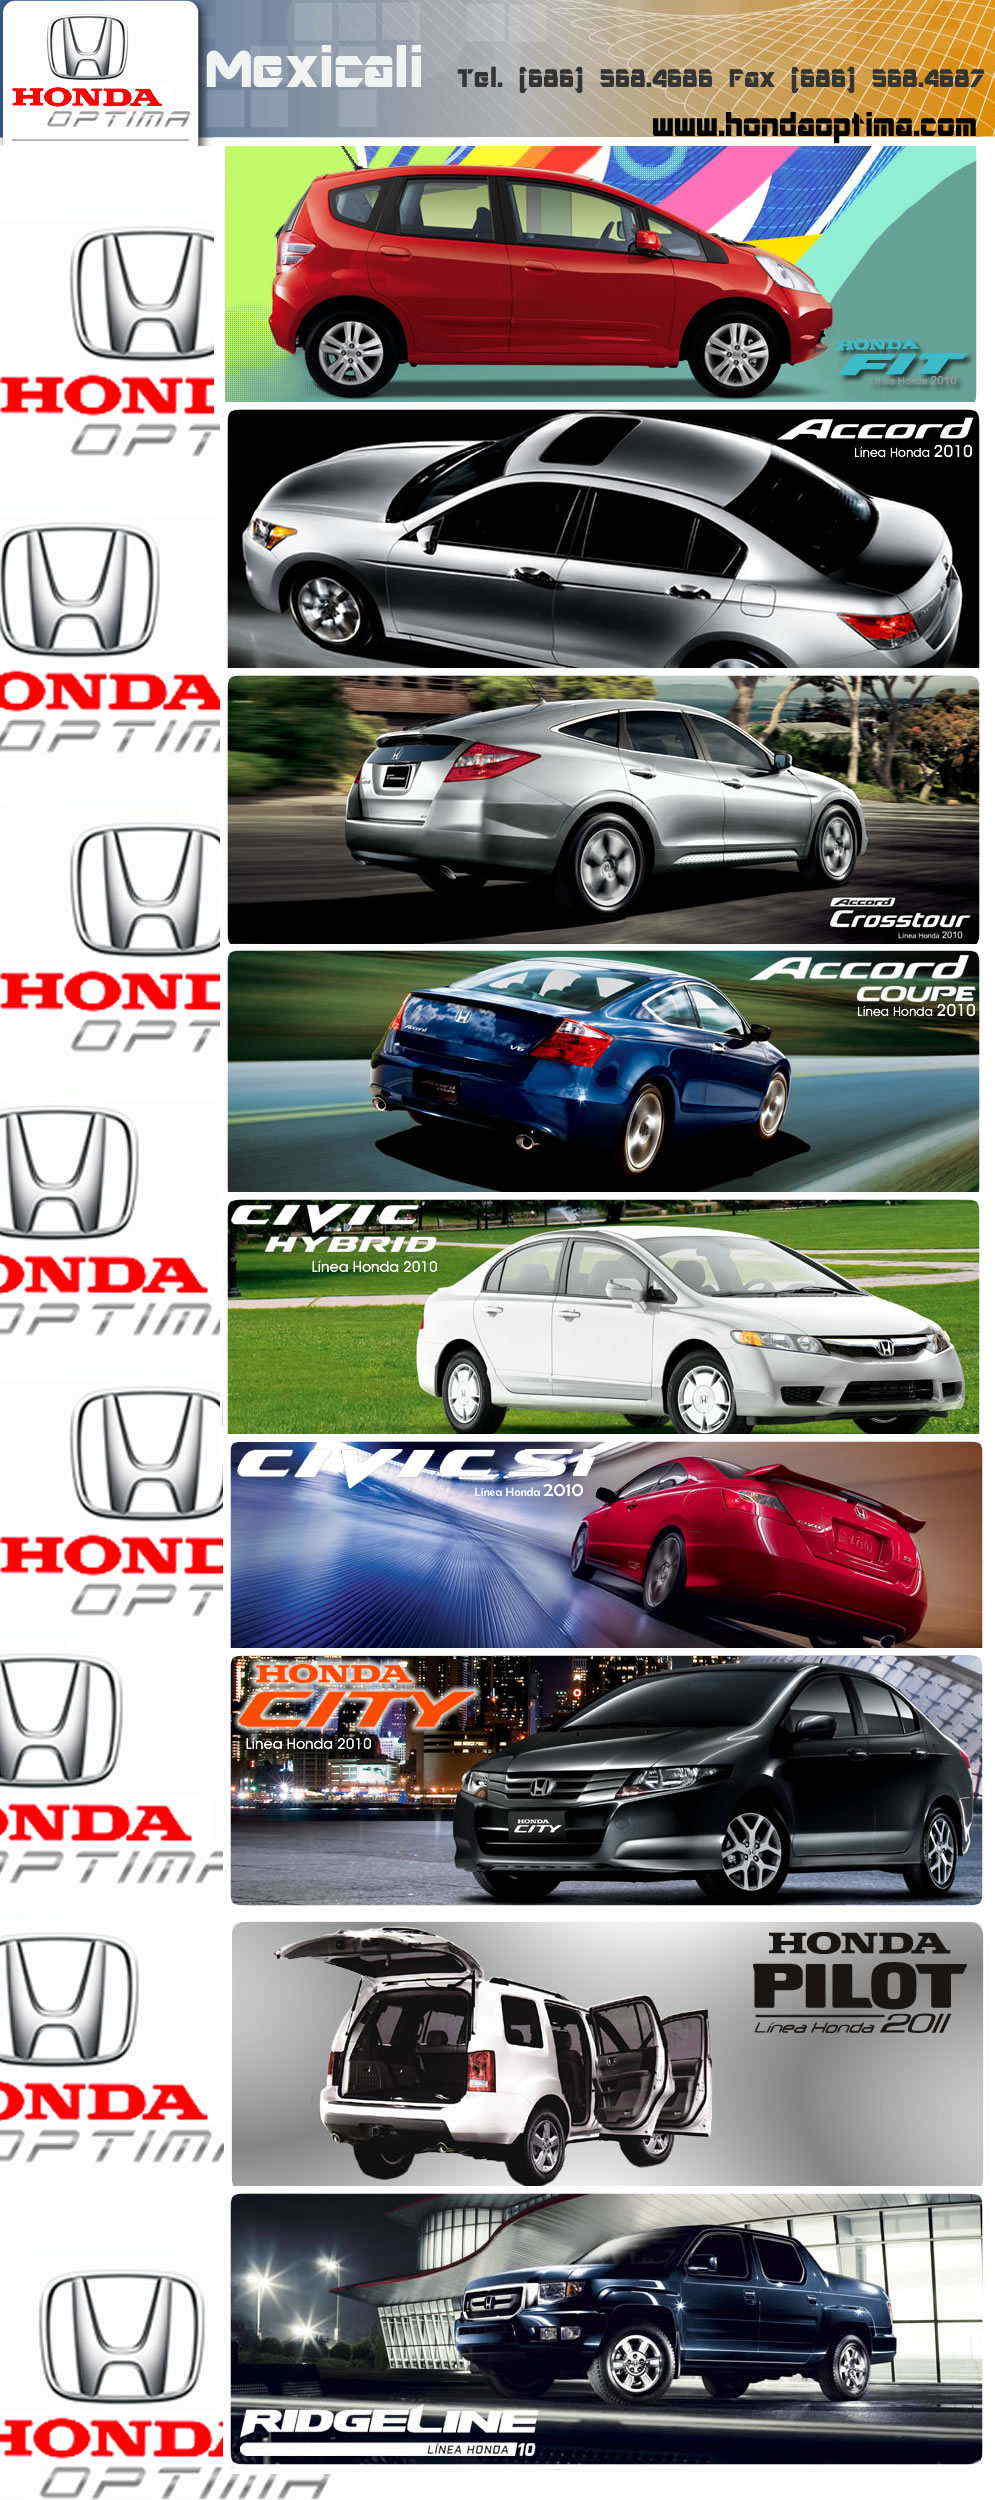 HONDA Optima-Agencia Honda, autos y refacciones originales.